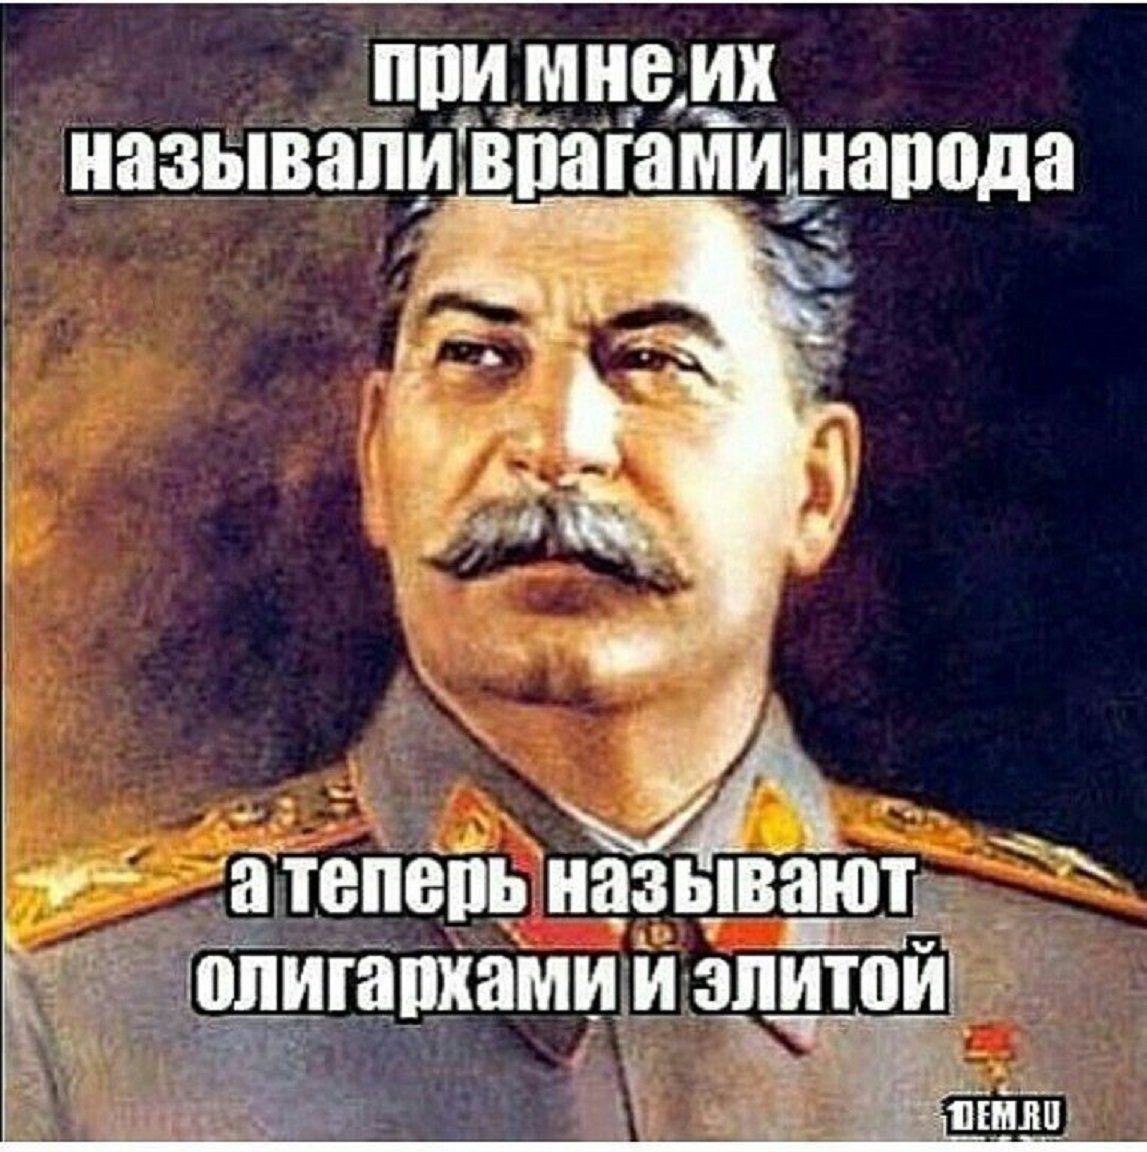 Анекдот Сталин Расстрелять